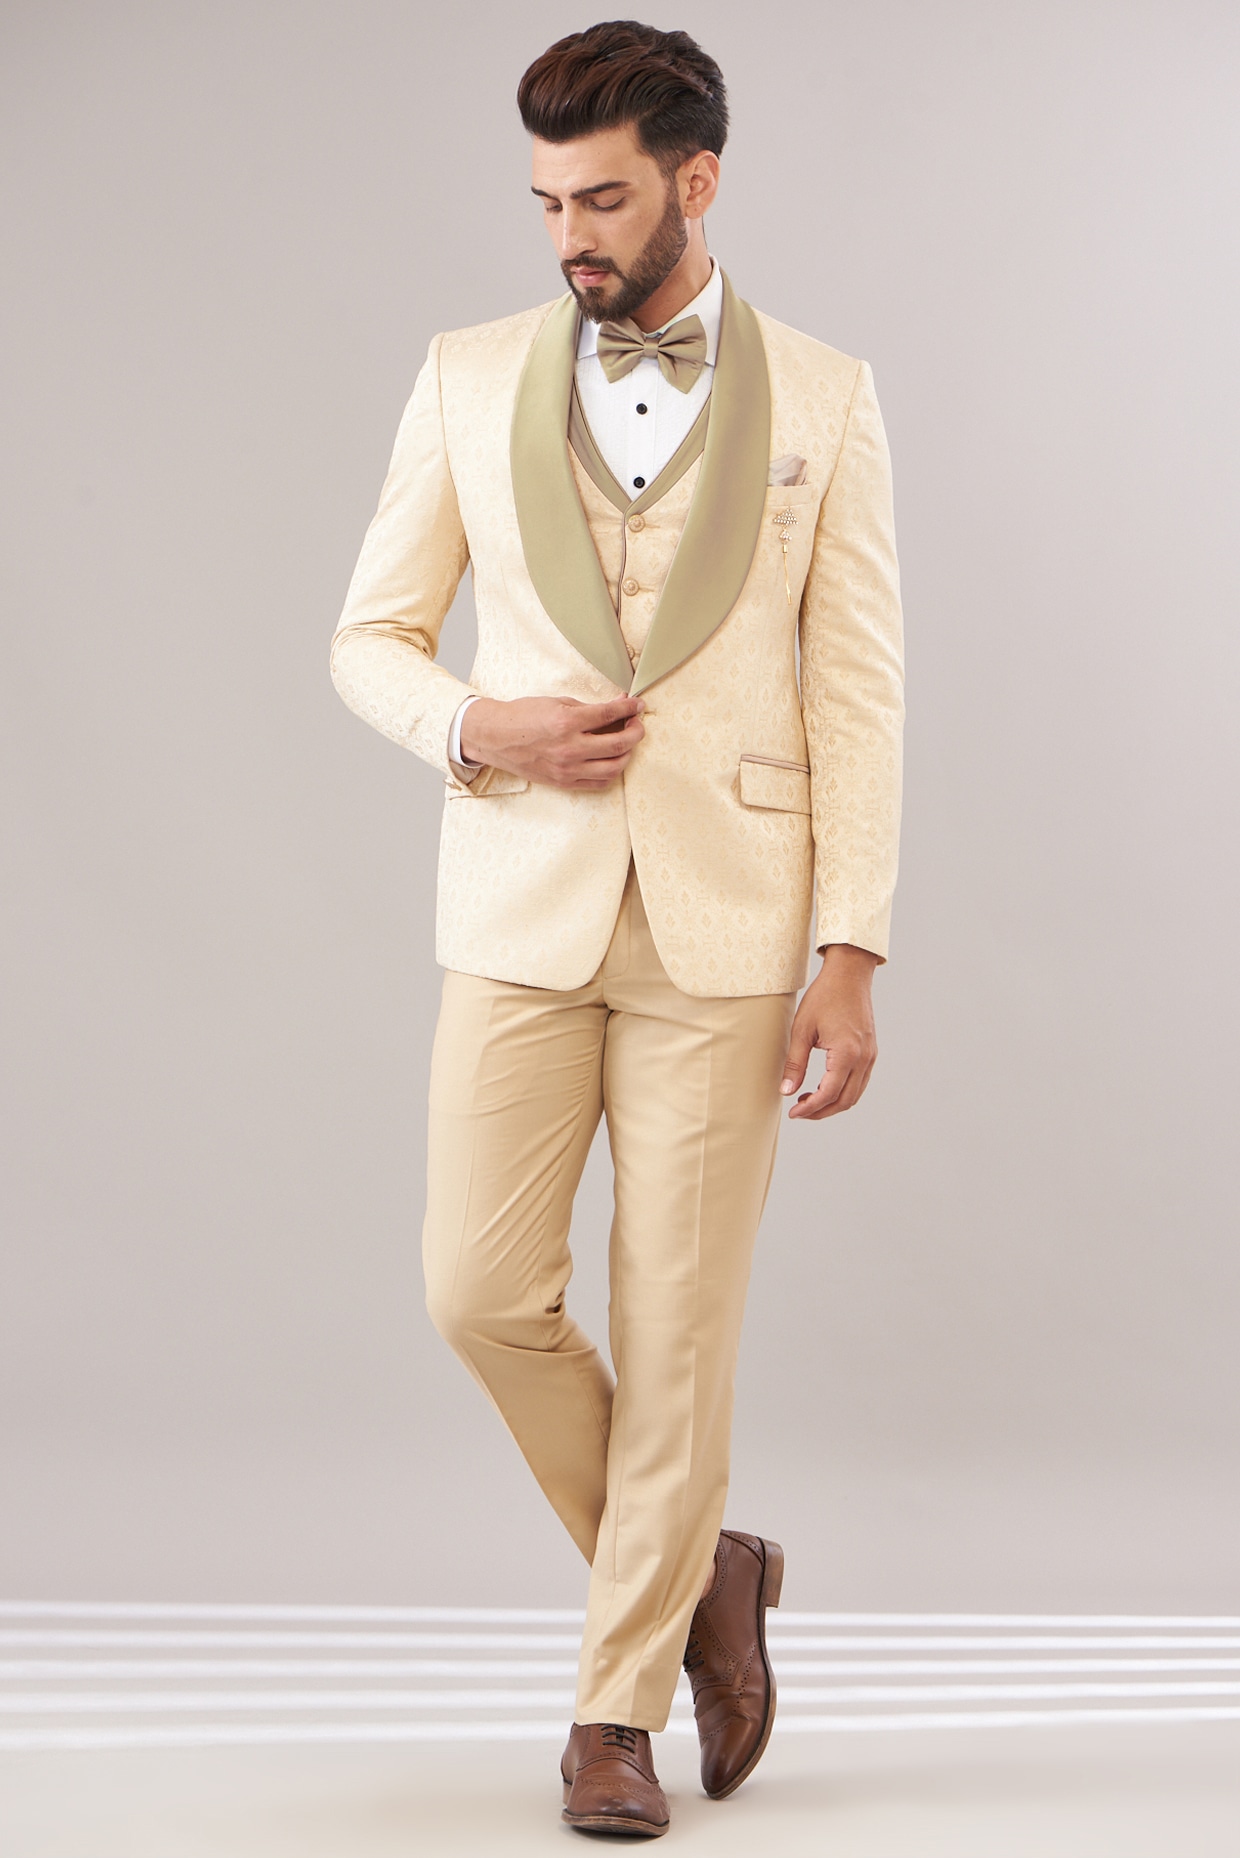 Champagne Suit - Light Gold Color Shiny Suit - Sateen Suit -